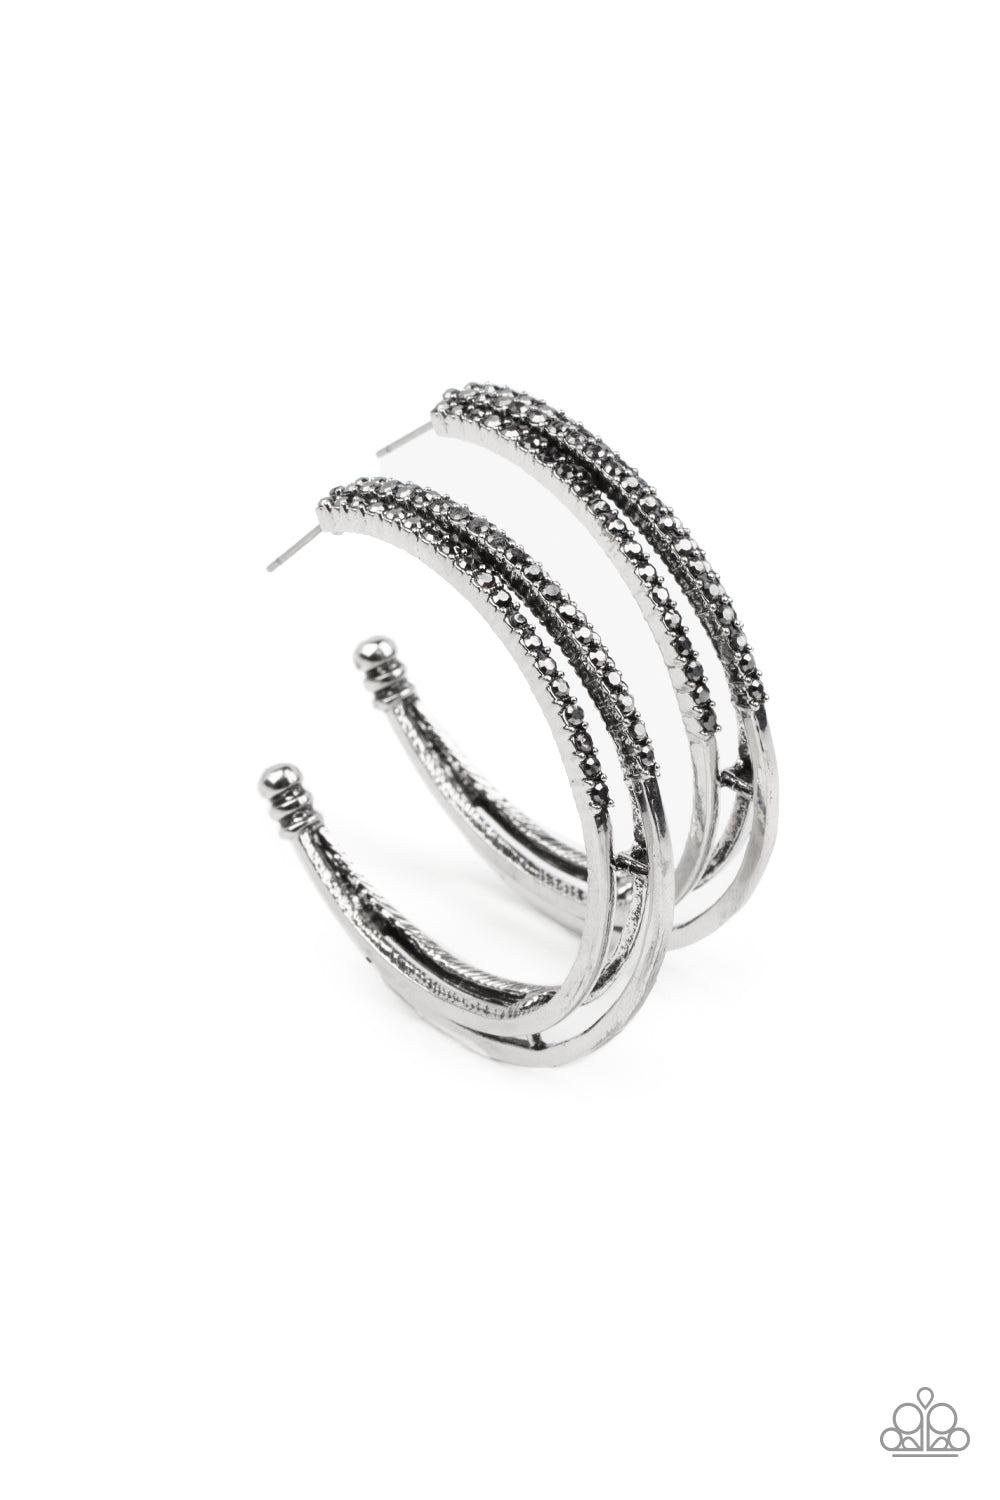 Triple Crown Couture - Silver Hoop Earrings - Princess Glam Shop